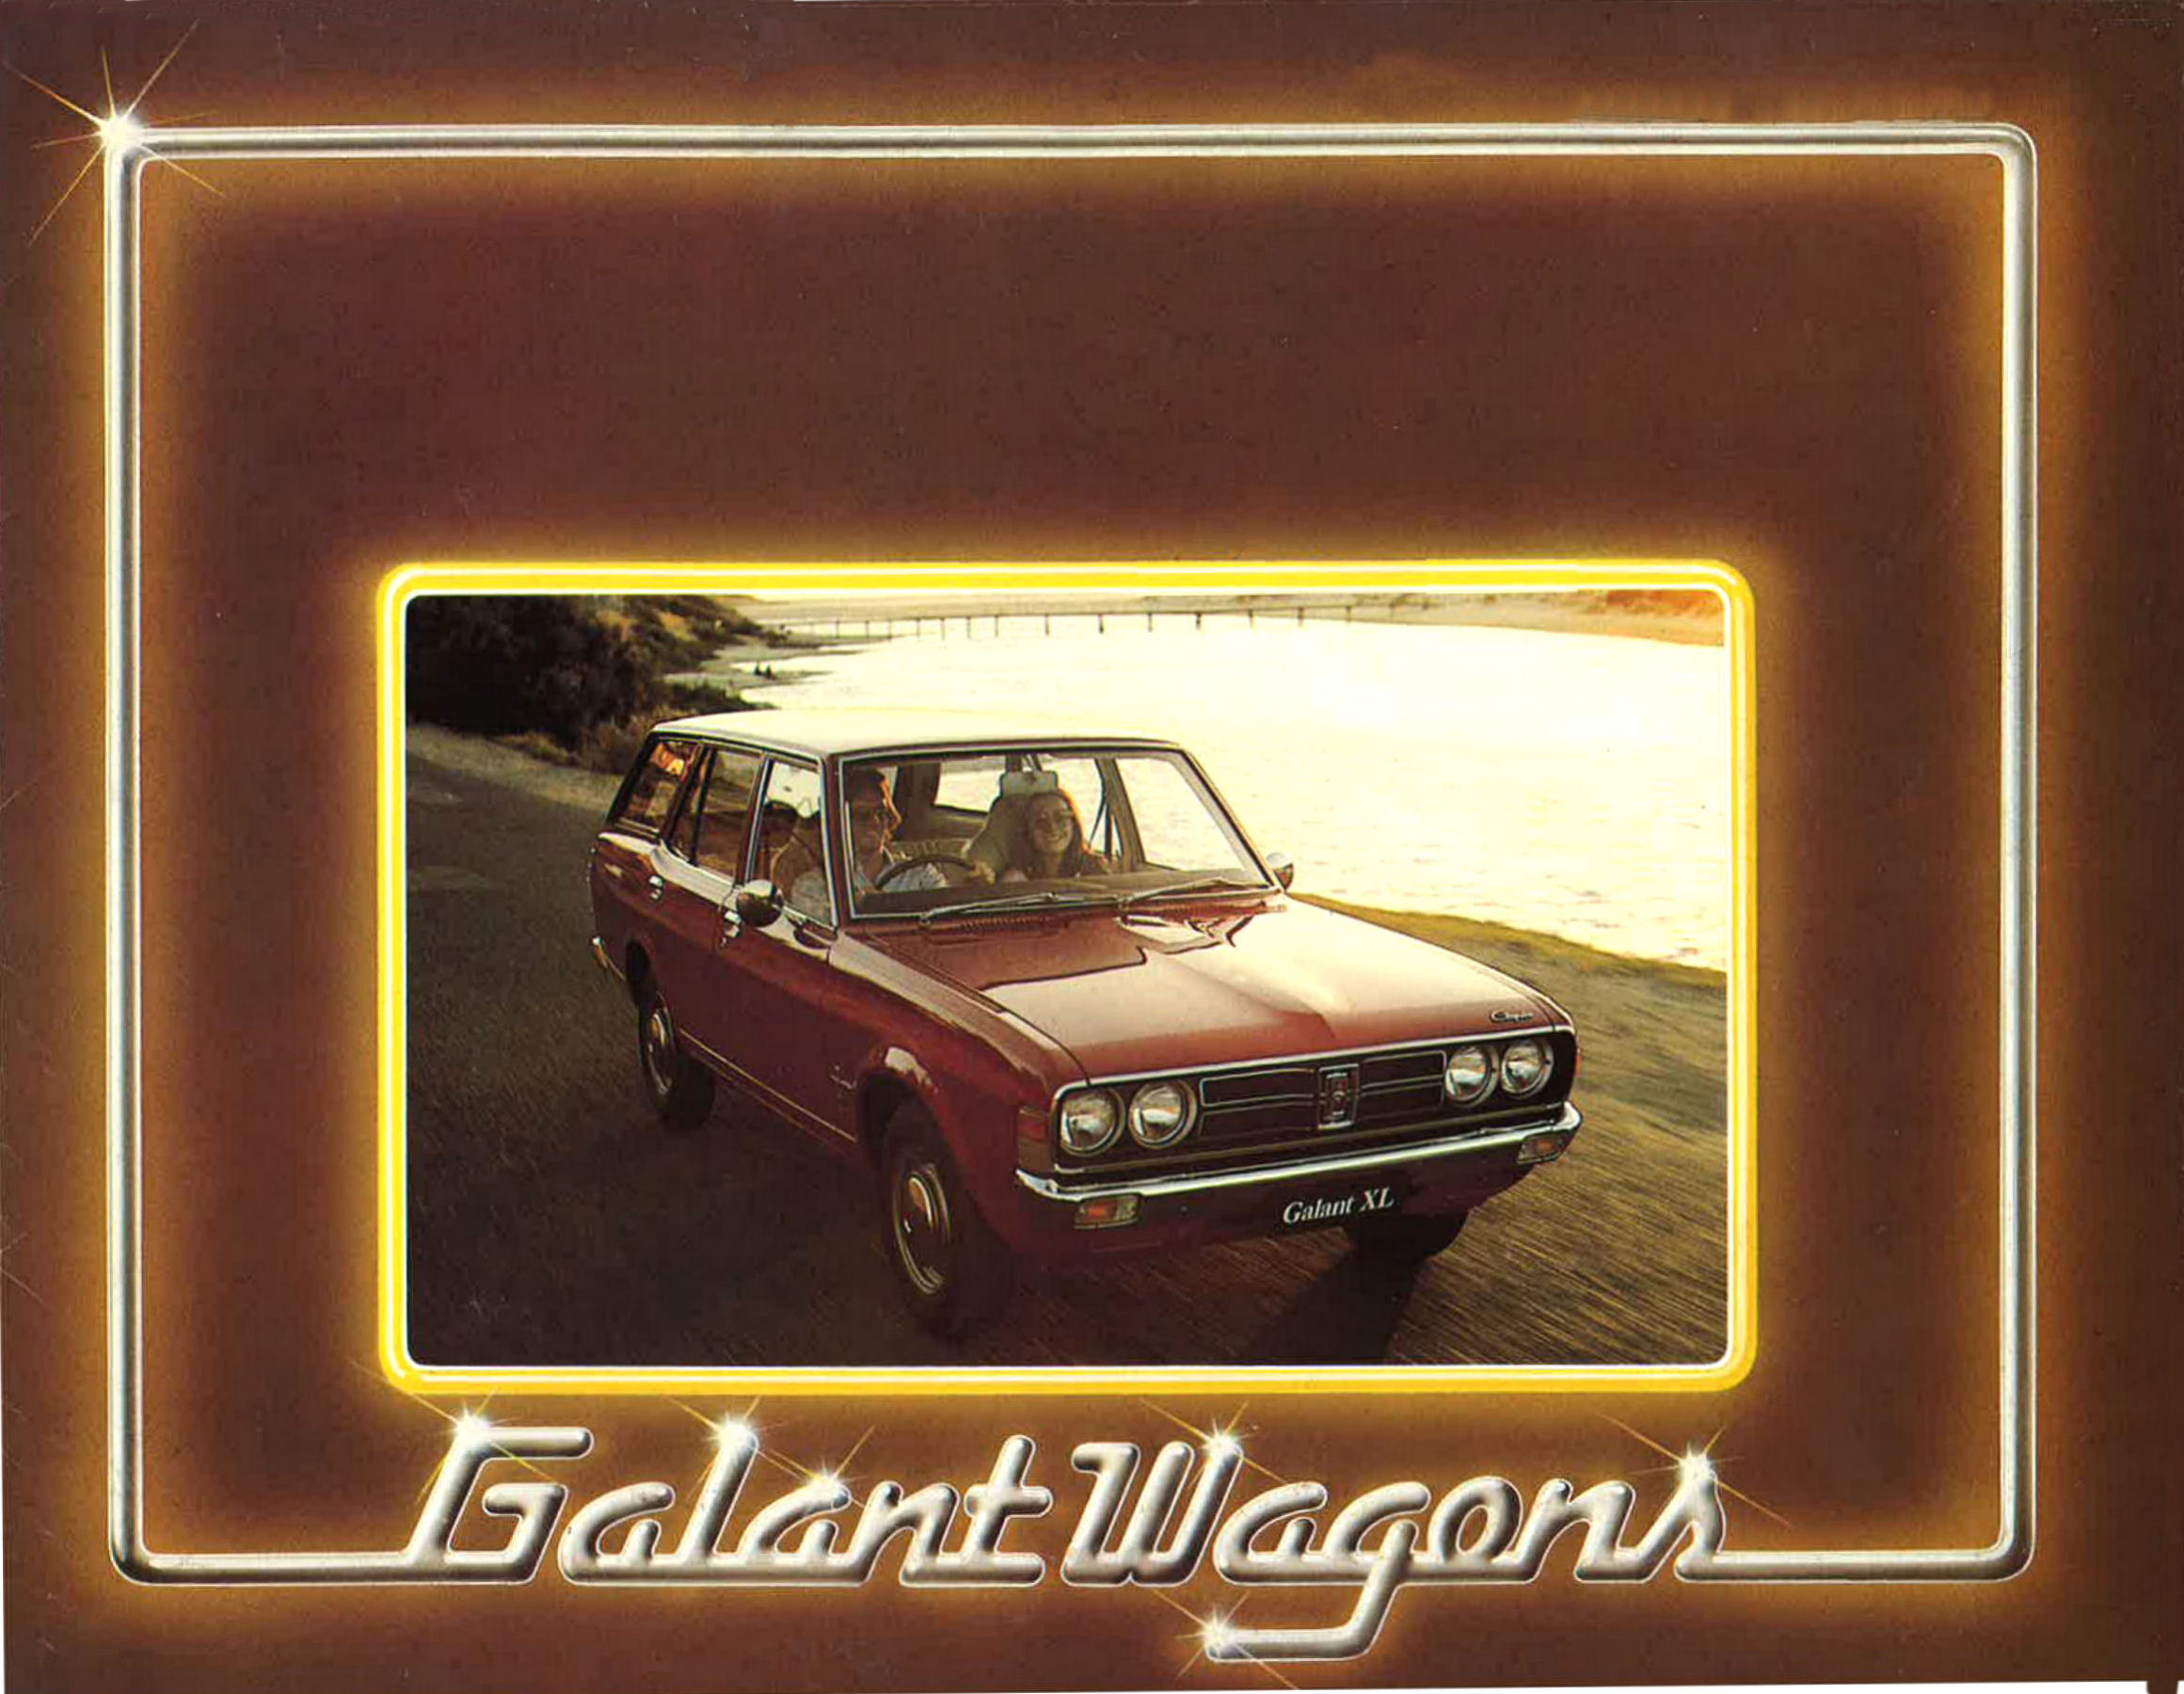 1976 Chrysler GD Galant Wagon-01